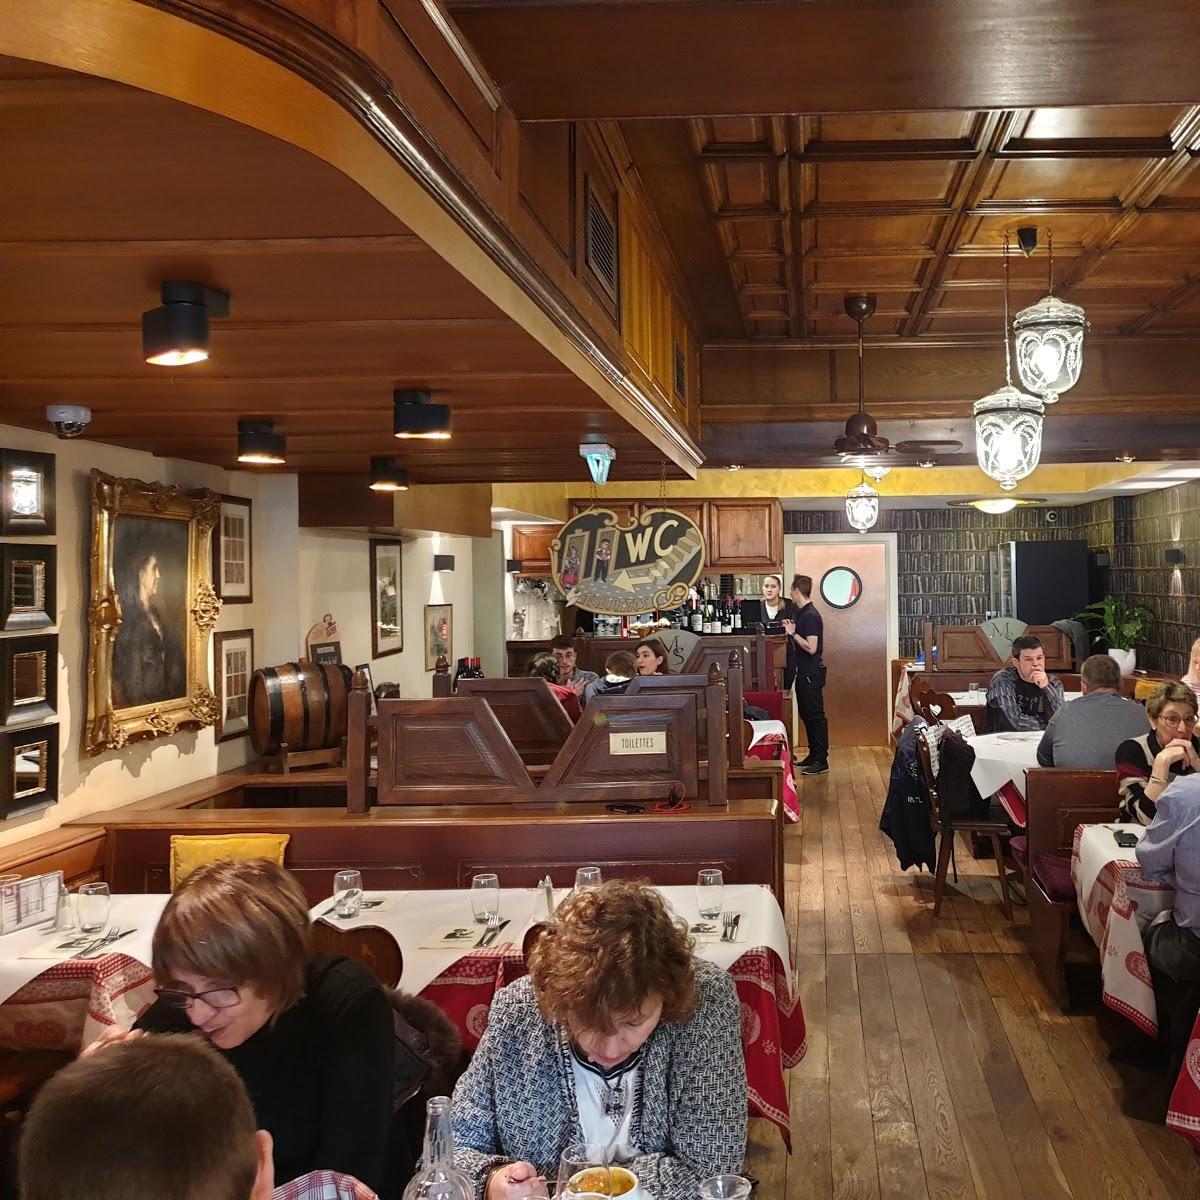 Restaurant "Muensterstuewel" in Strasbourg